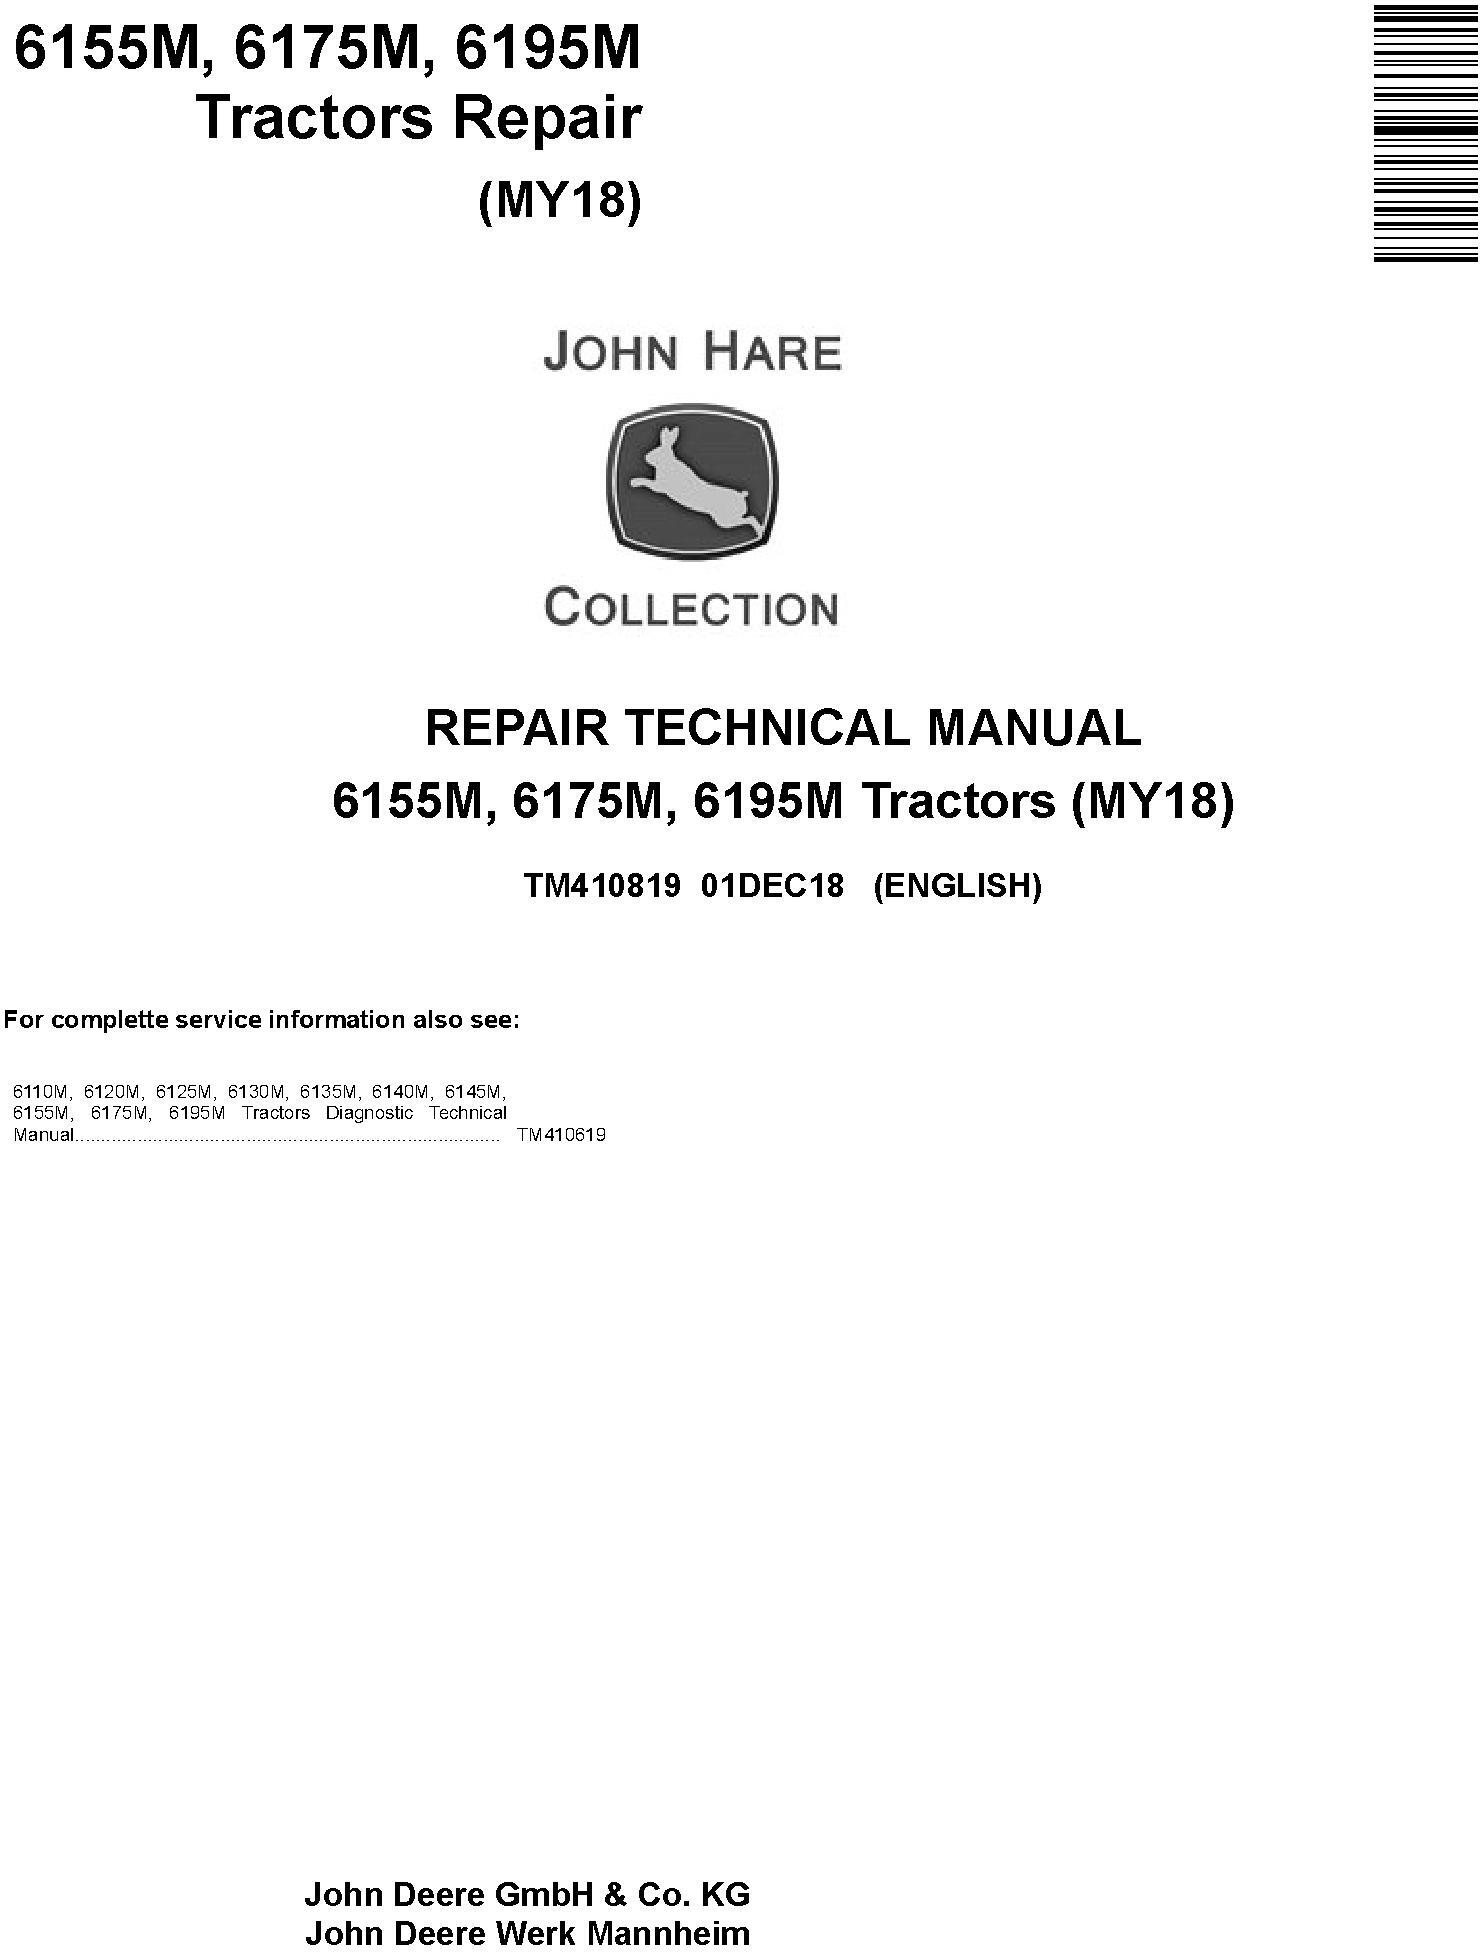 John Deere 6155M, 6175M, 6195M Tractors (MY18) Repair Technical Manual (TM410819)